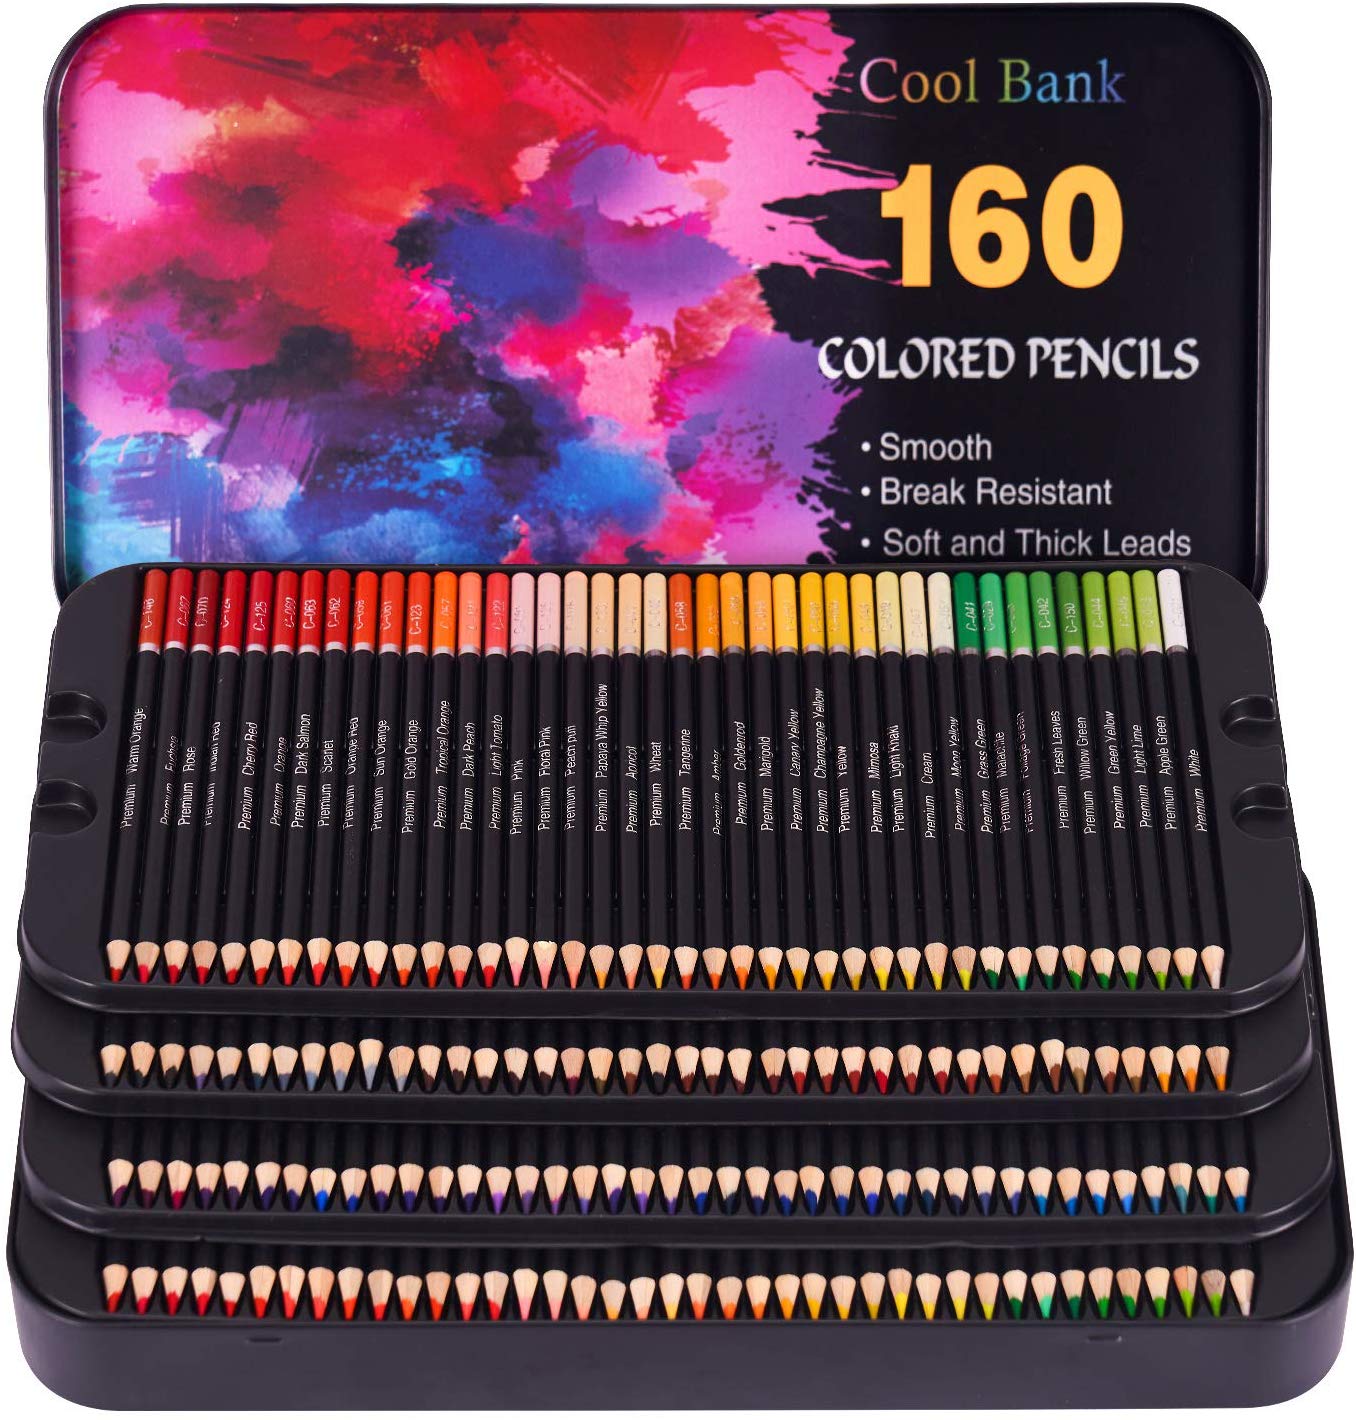 https://petesartscraftssewing.com/cdn/shop/products/160_Professional_Colored_Pencils_Artist_Pencils_Set_1024x1024@2x.jpg?v=1581756716